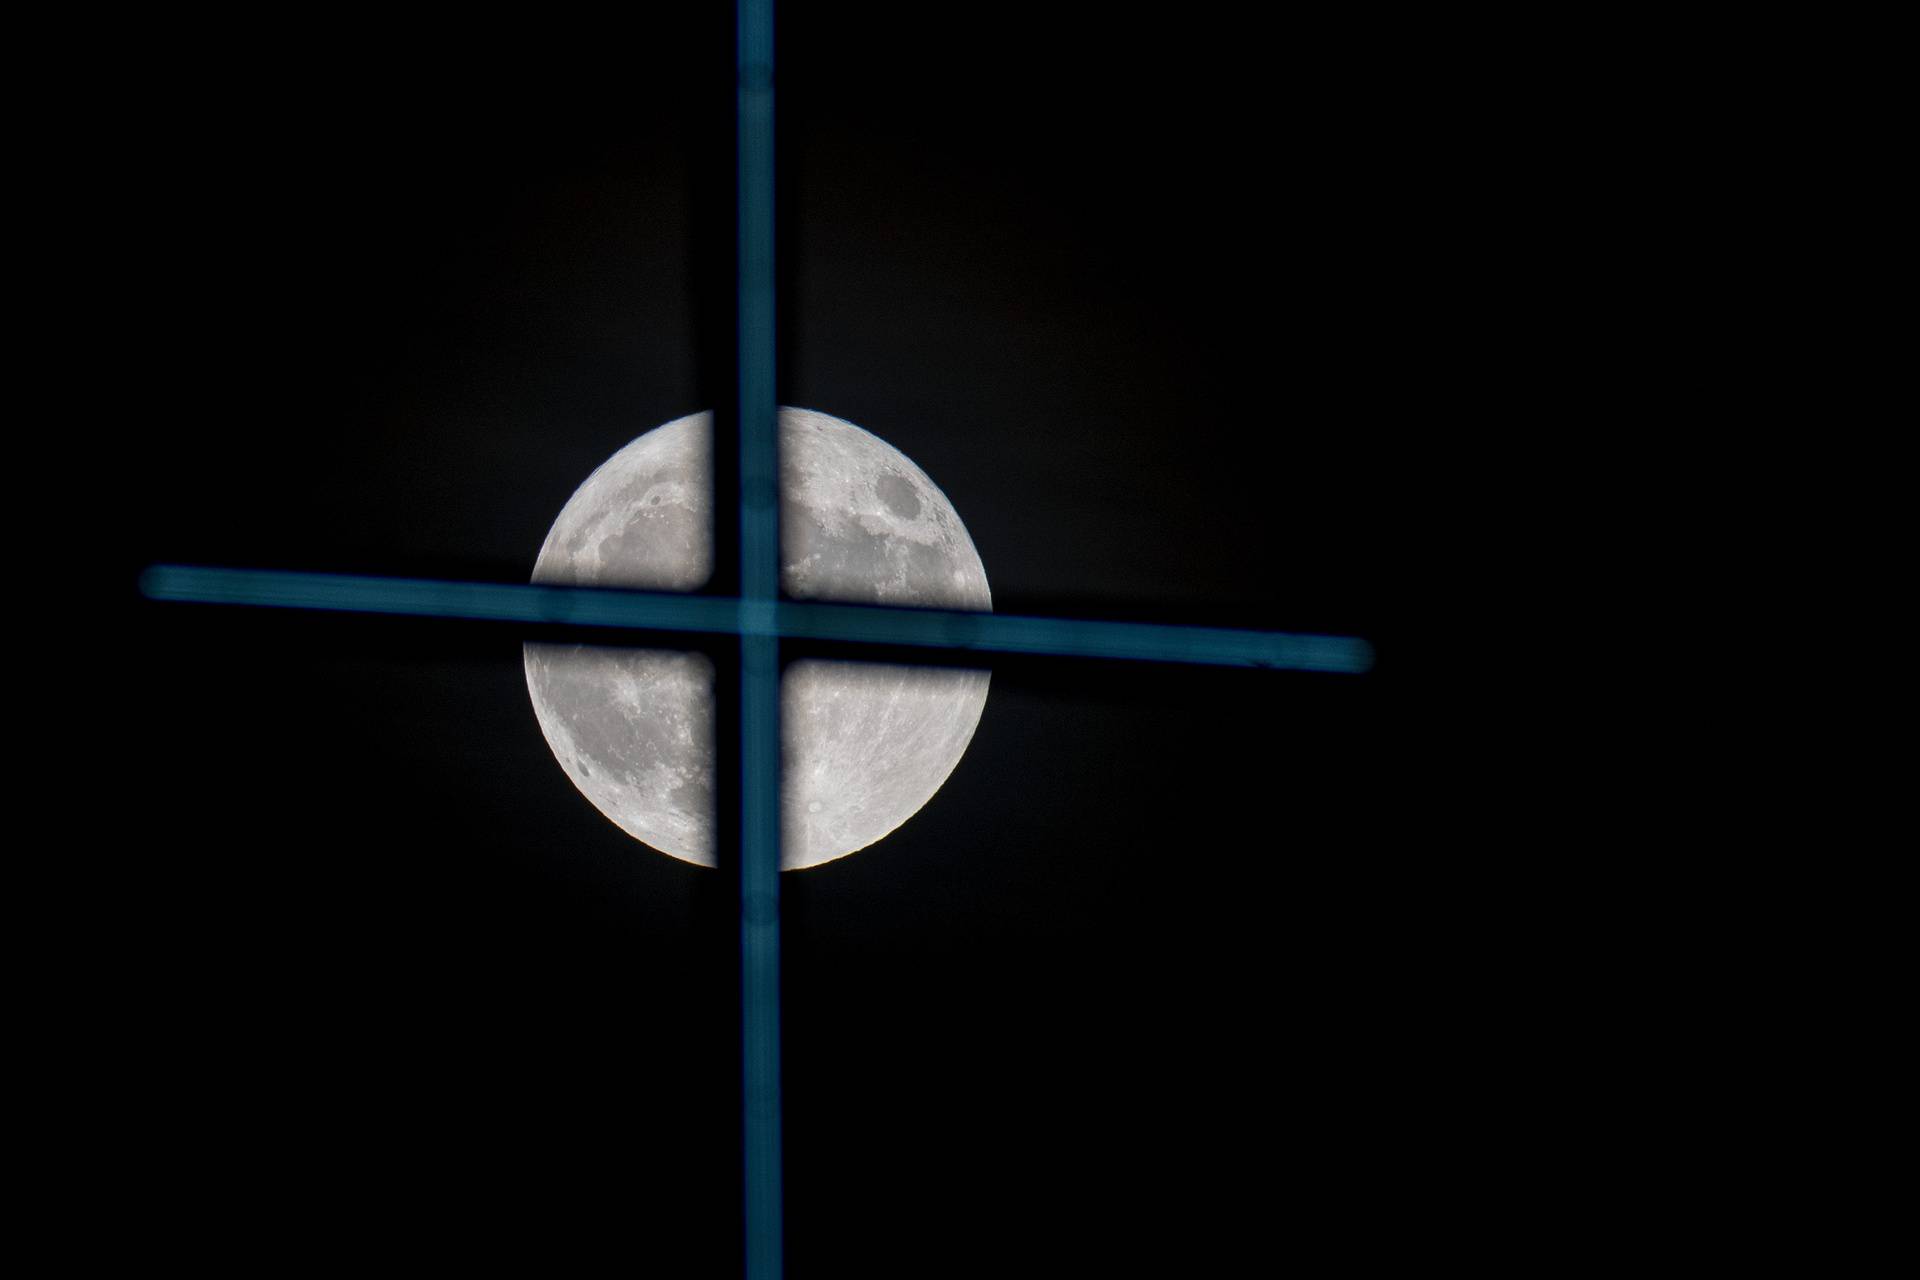 Plavi Mjesec, pojava punog Mjeseca dva puta u jednom kalendarskom mjesecu